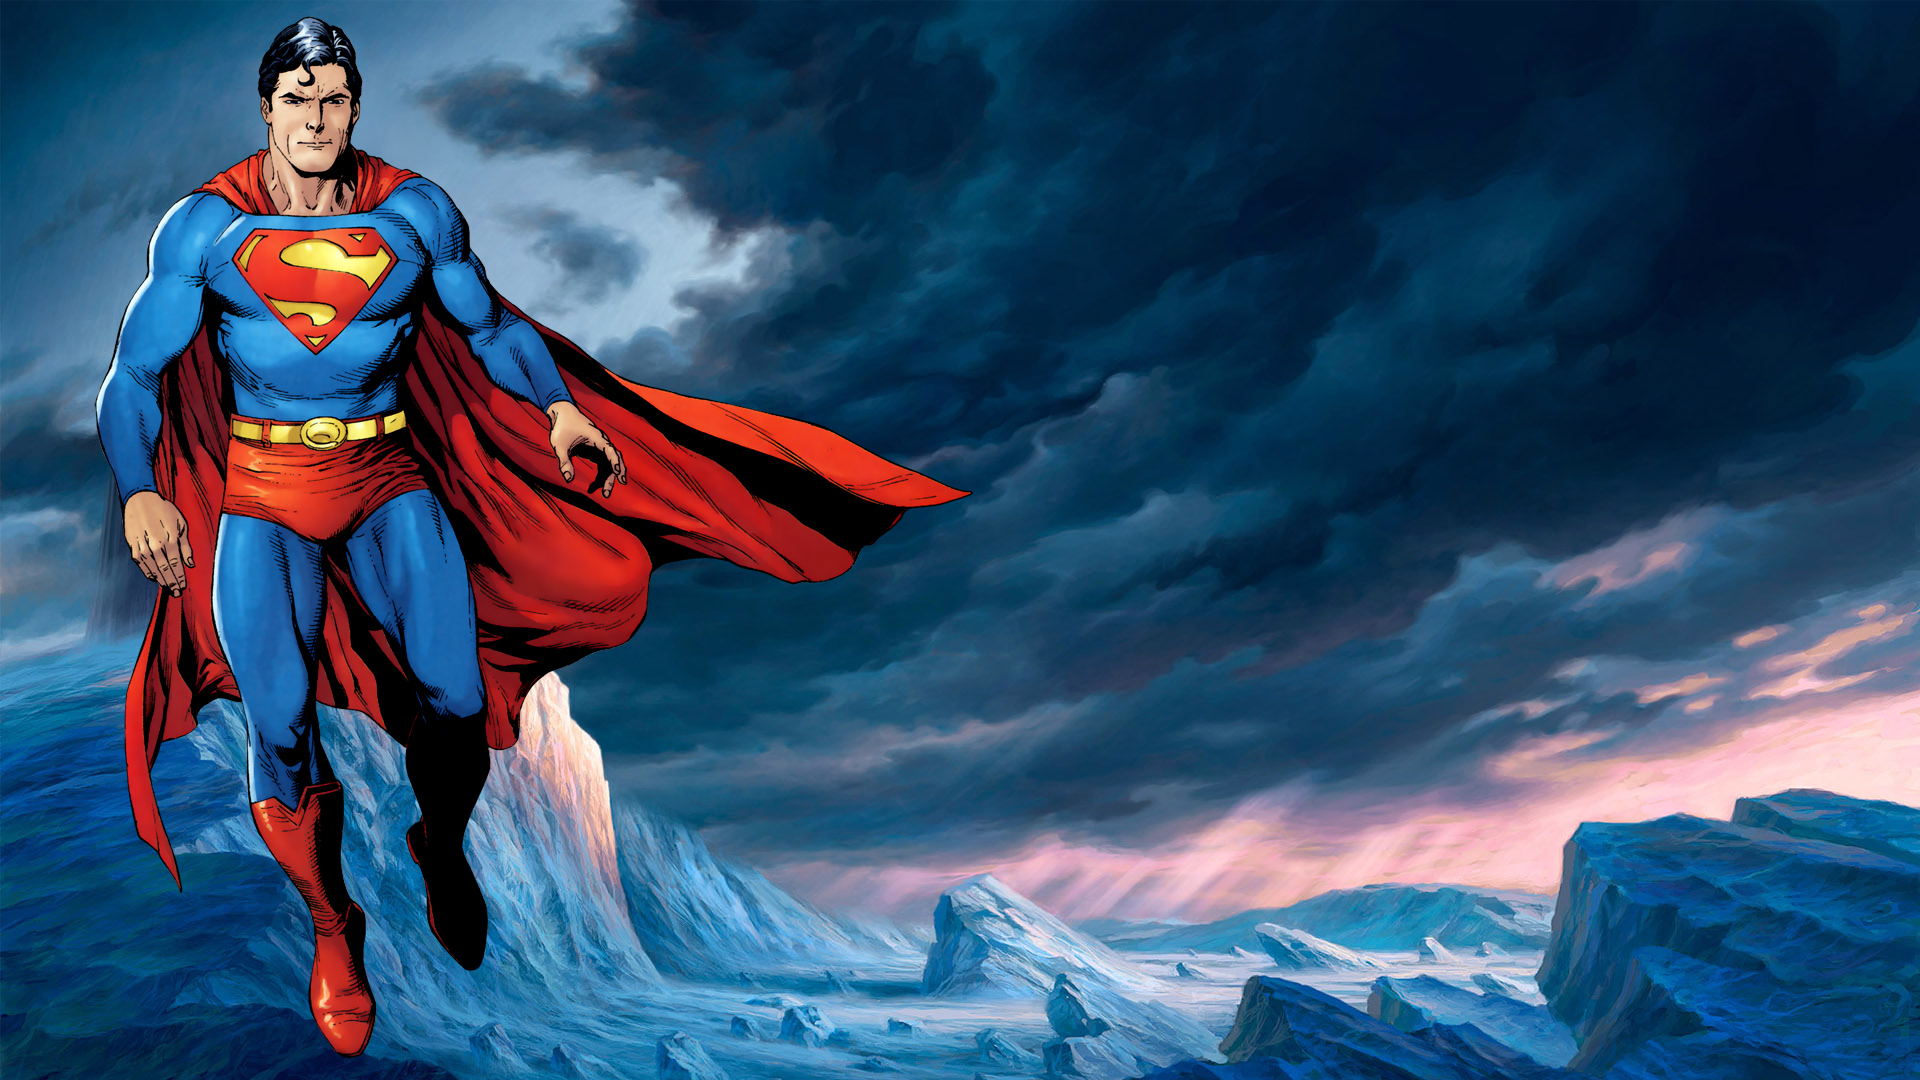 74+] Superman Wallpaper Images - WallpaperSafari